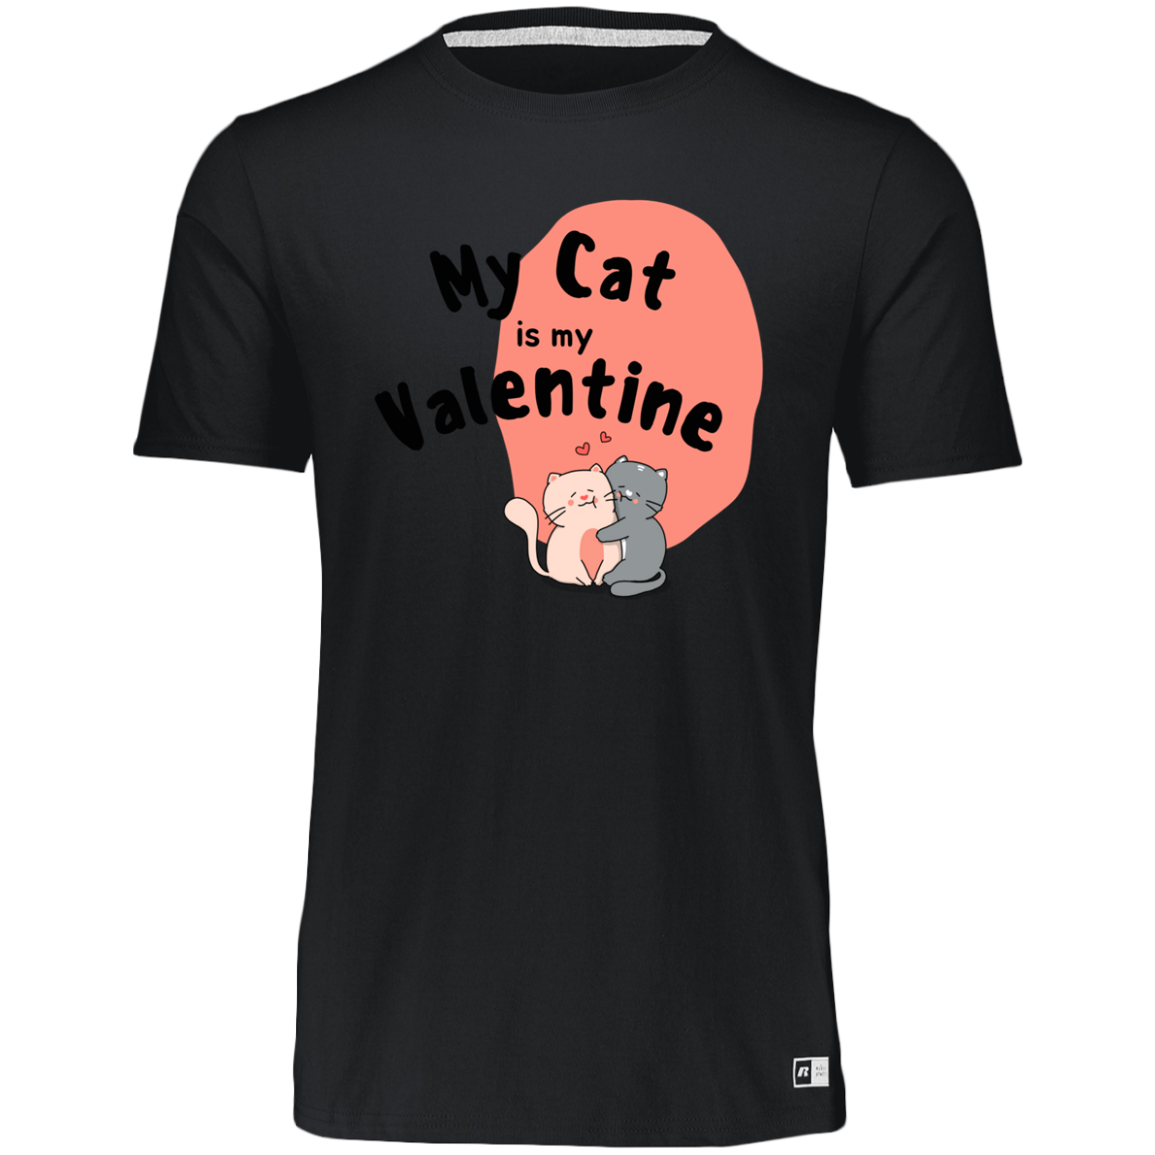 Women's Dri-Power Tee--My Cat is My Valentine